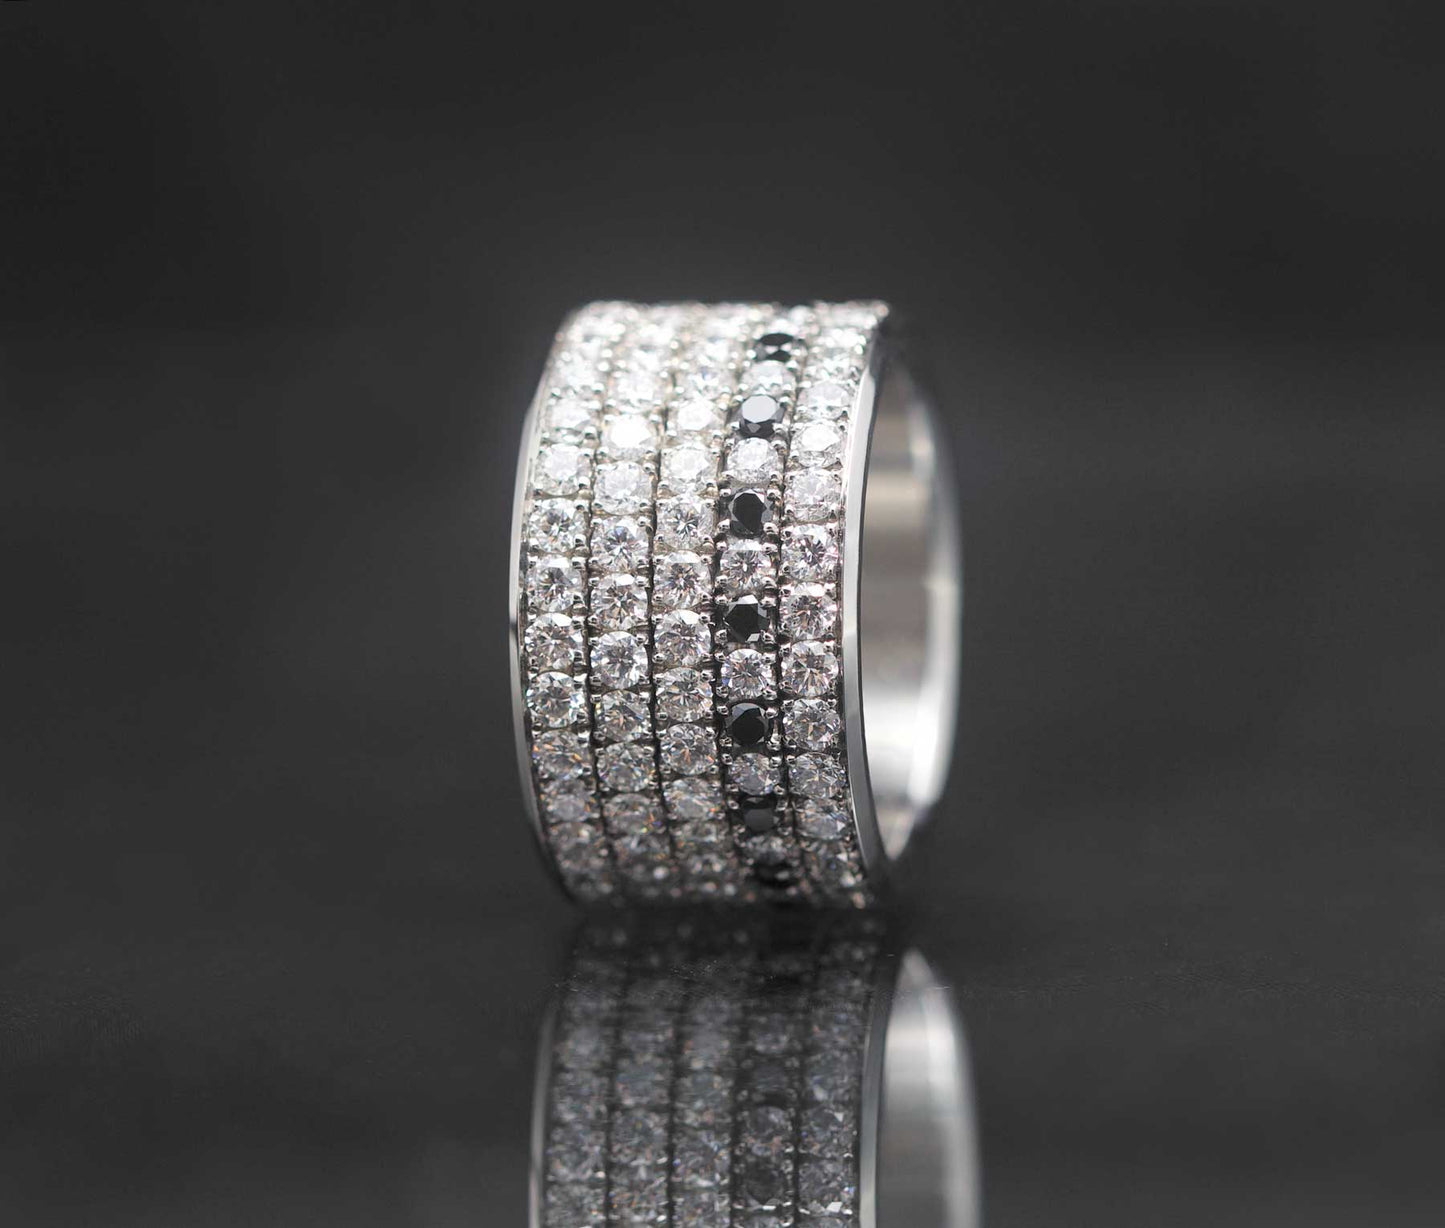 Medium Addon aus Stahl mit Diamanten und schwarzen 1,9mm Diamanten vollständig besetzt